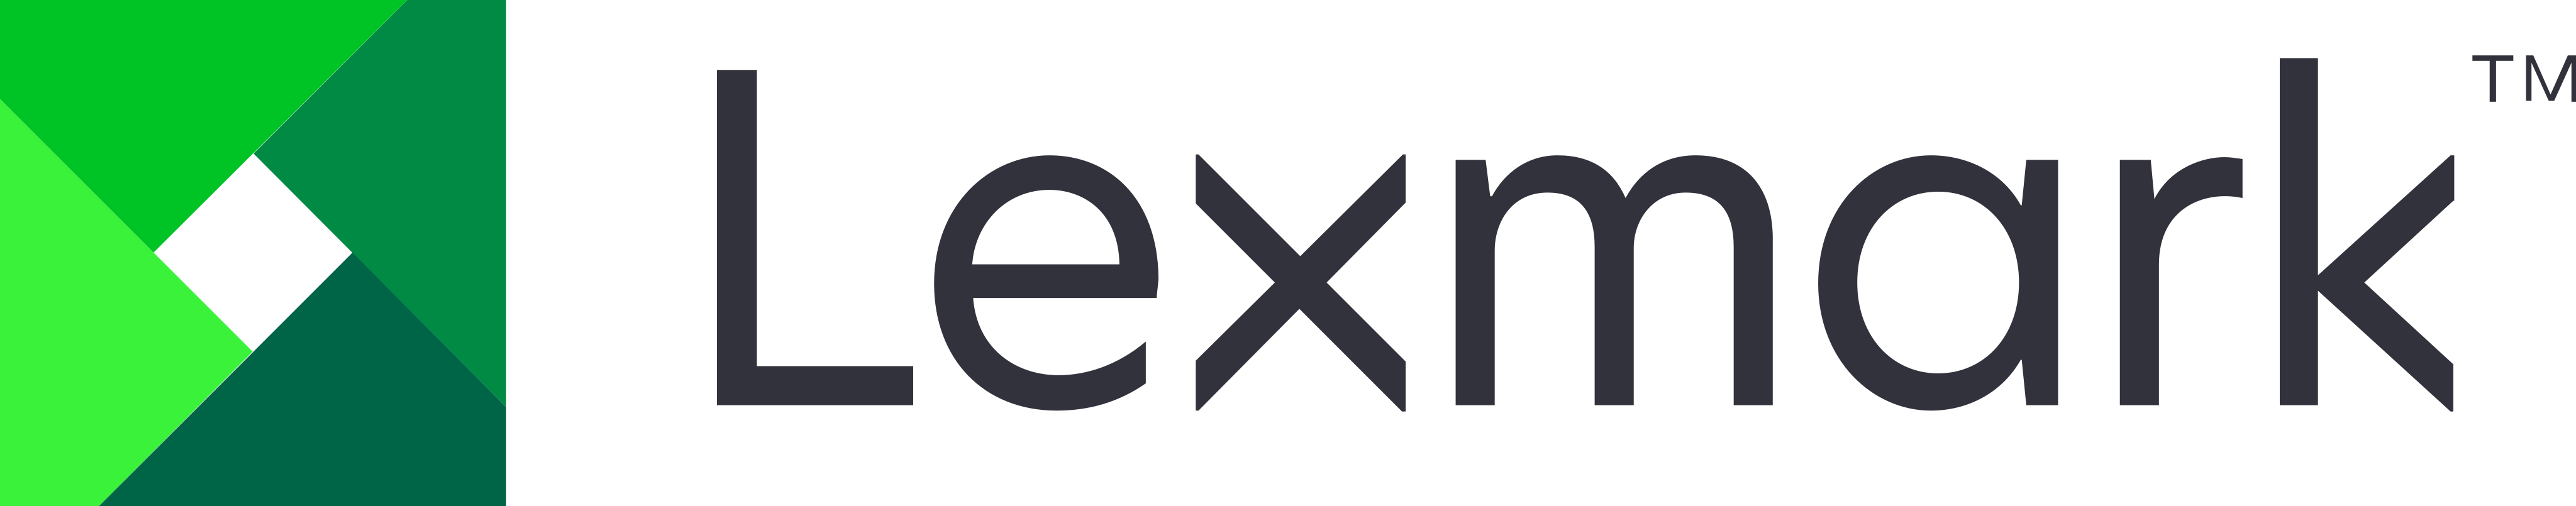 Lexmark Logo.